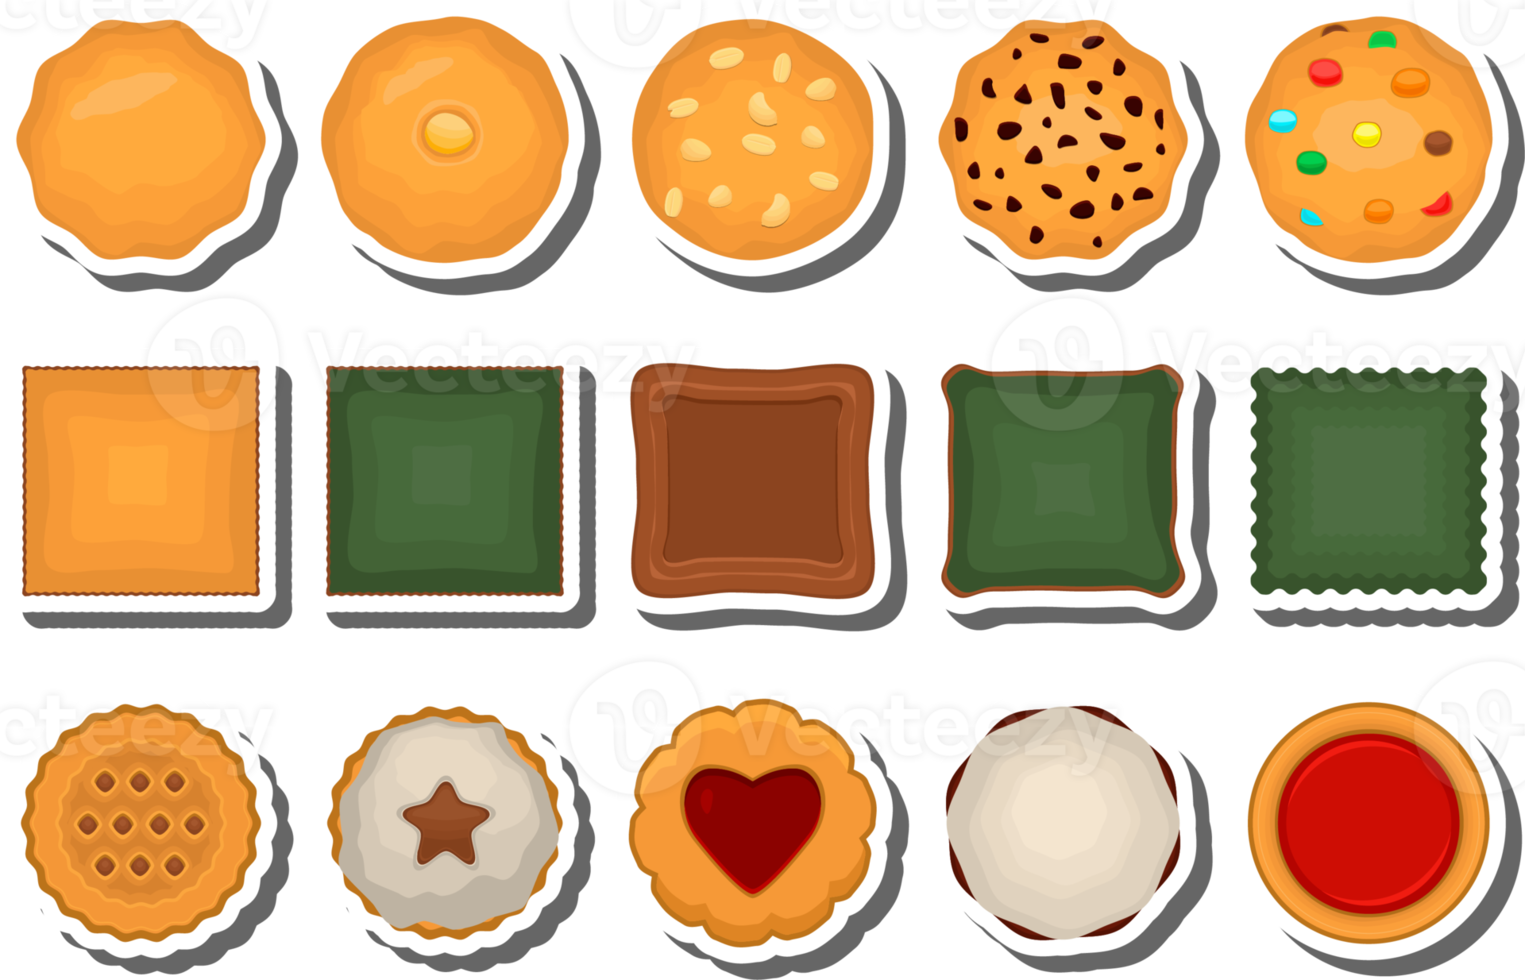 gran juego de galletas caseras de diferentes sabores en galletas de pastelería png